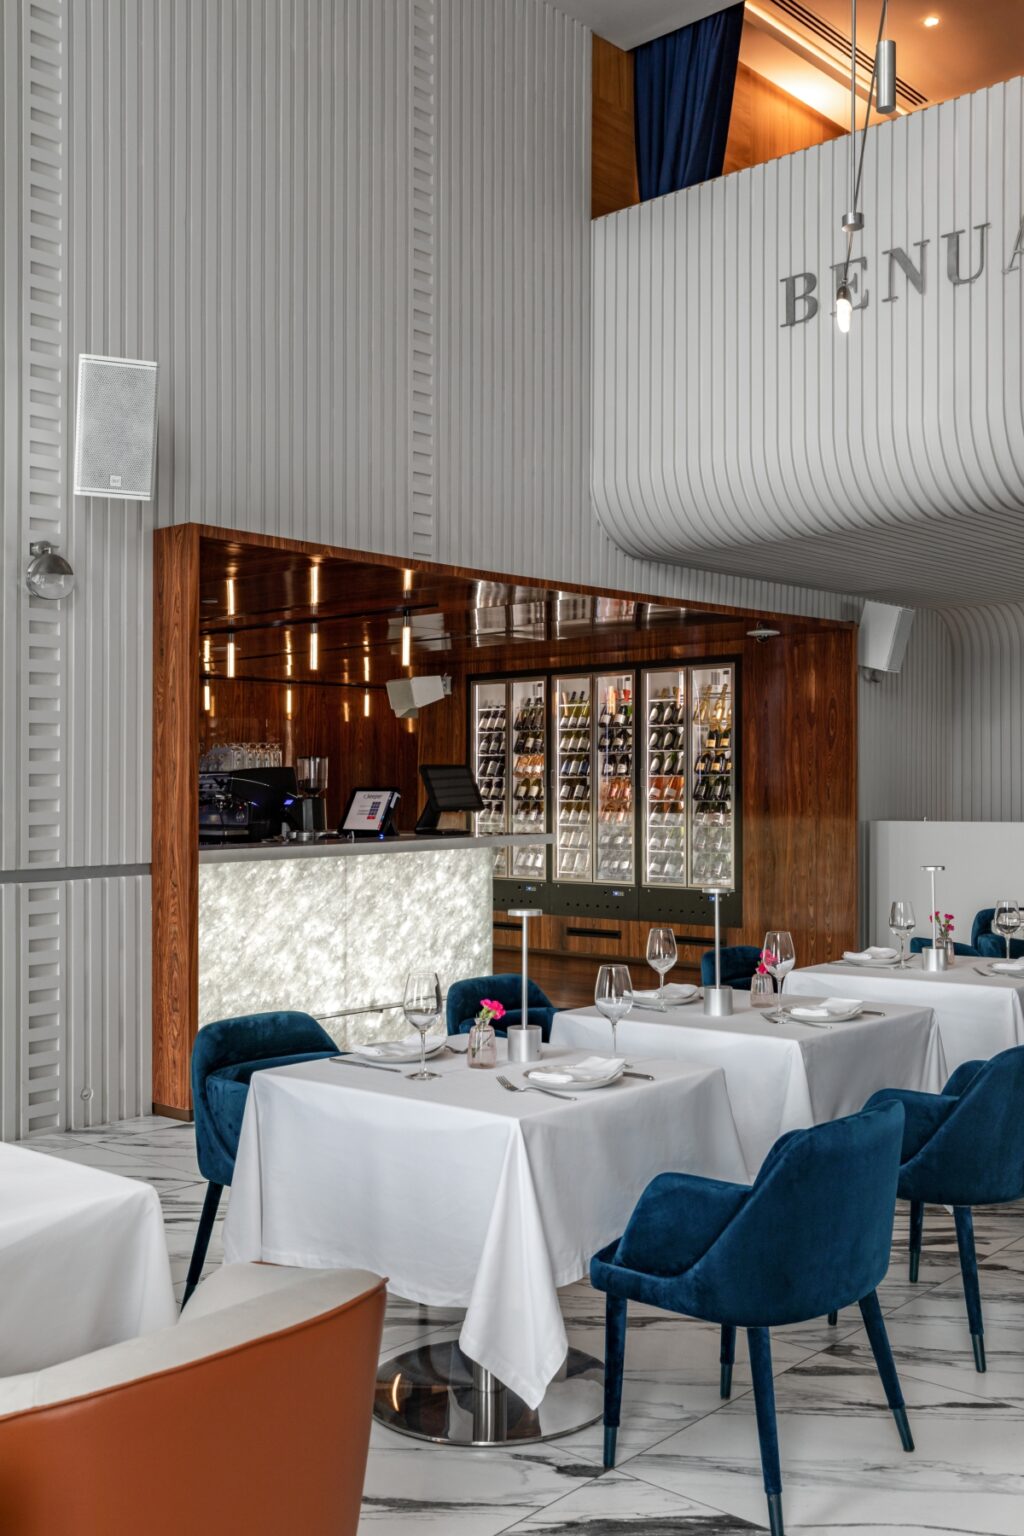 BENUAR restaurant leleganza dellArt Deco con uno scintillante tocco di Pop Art